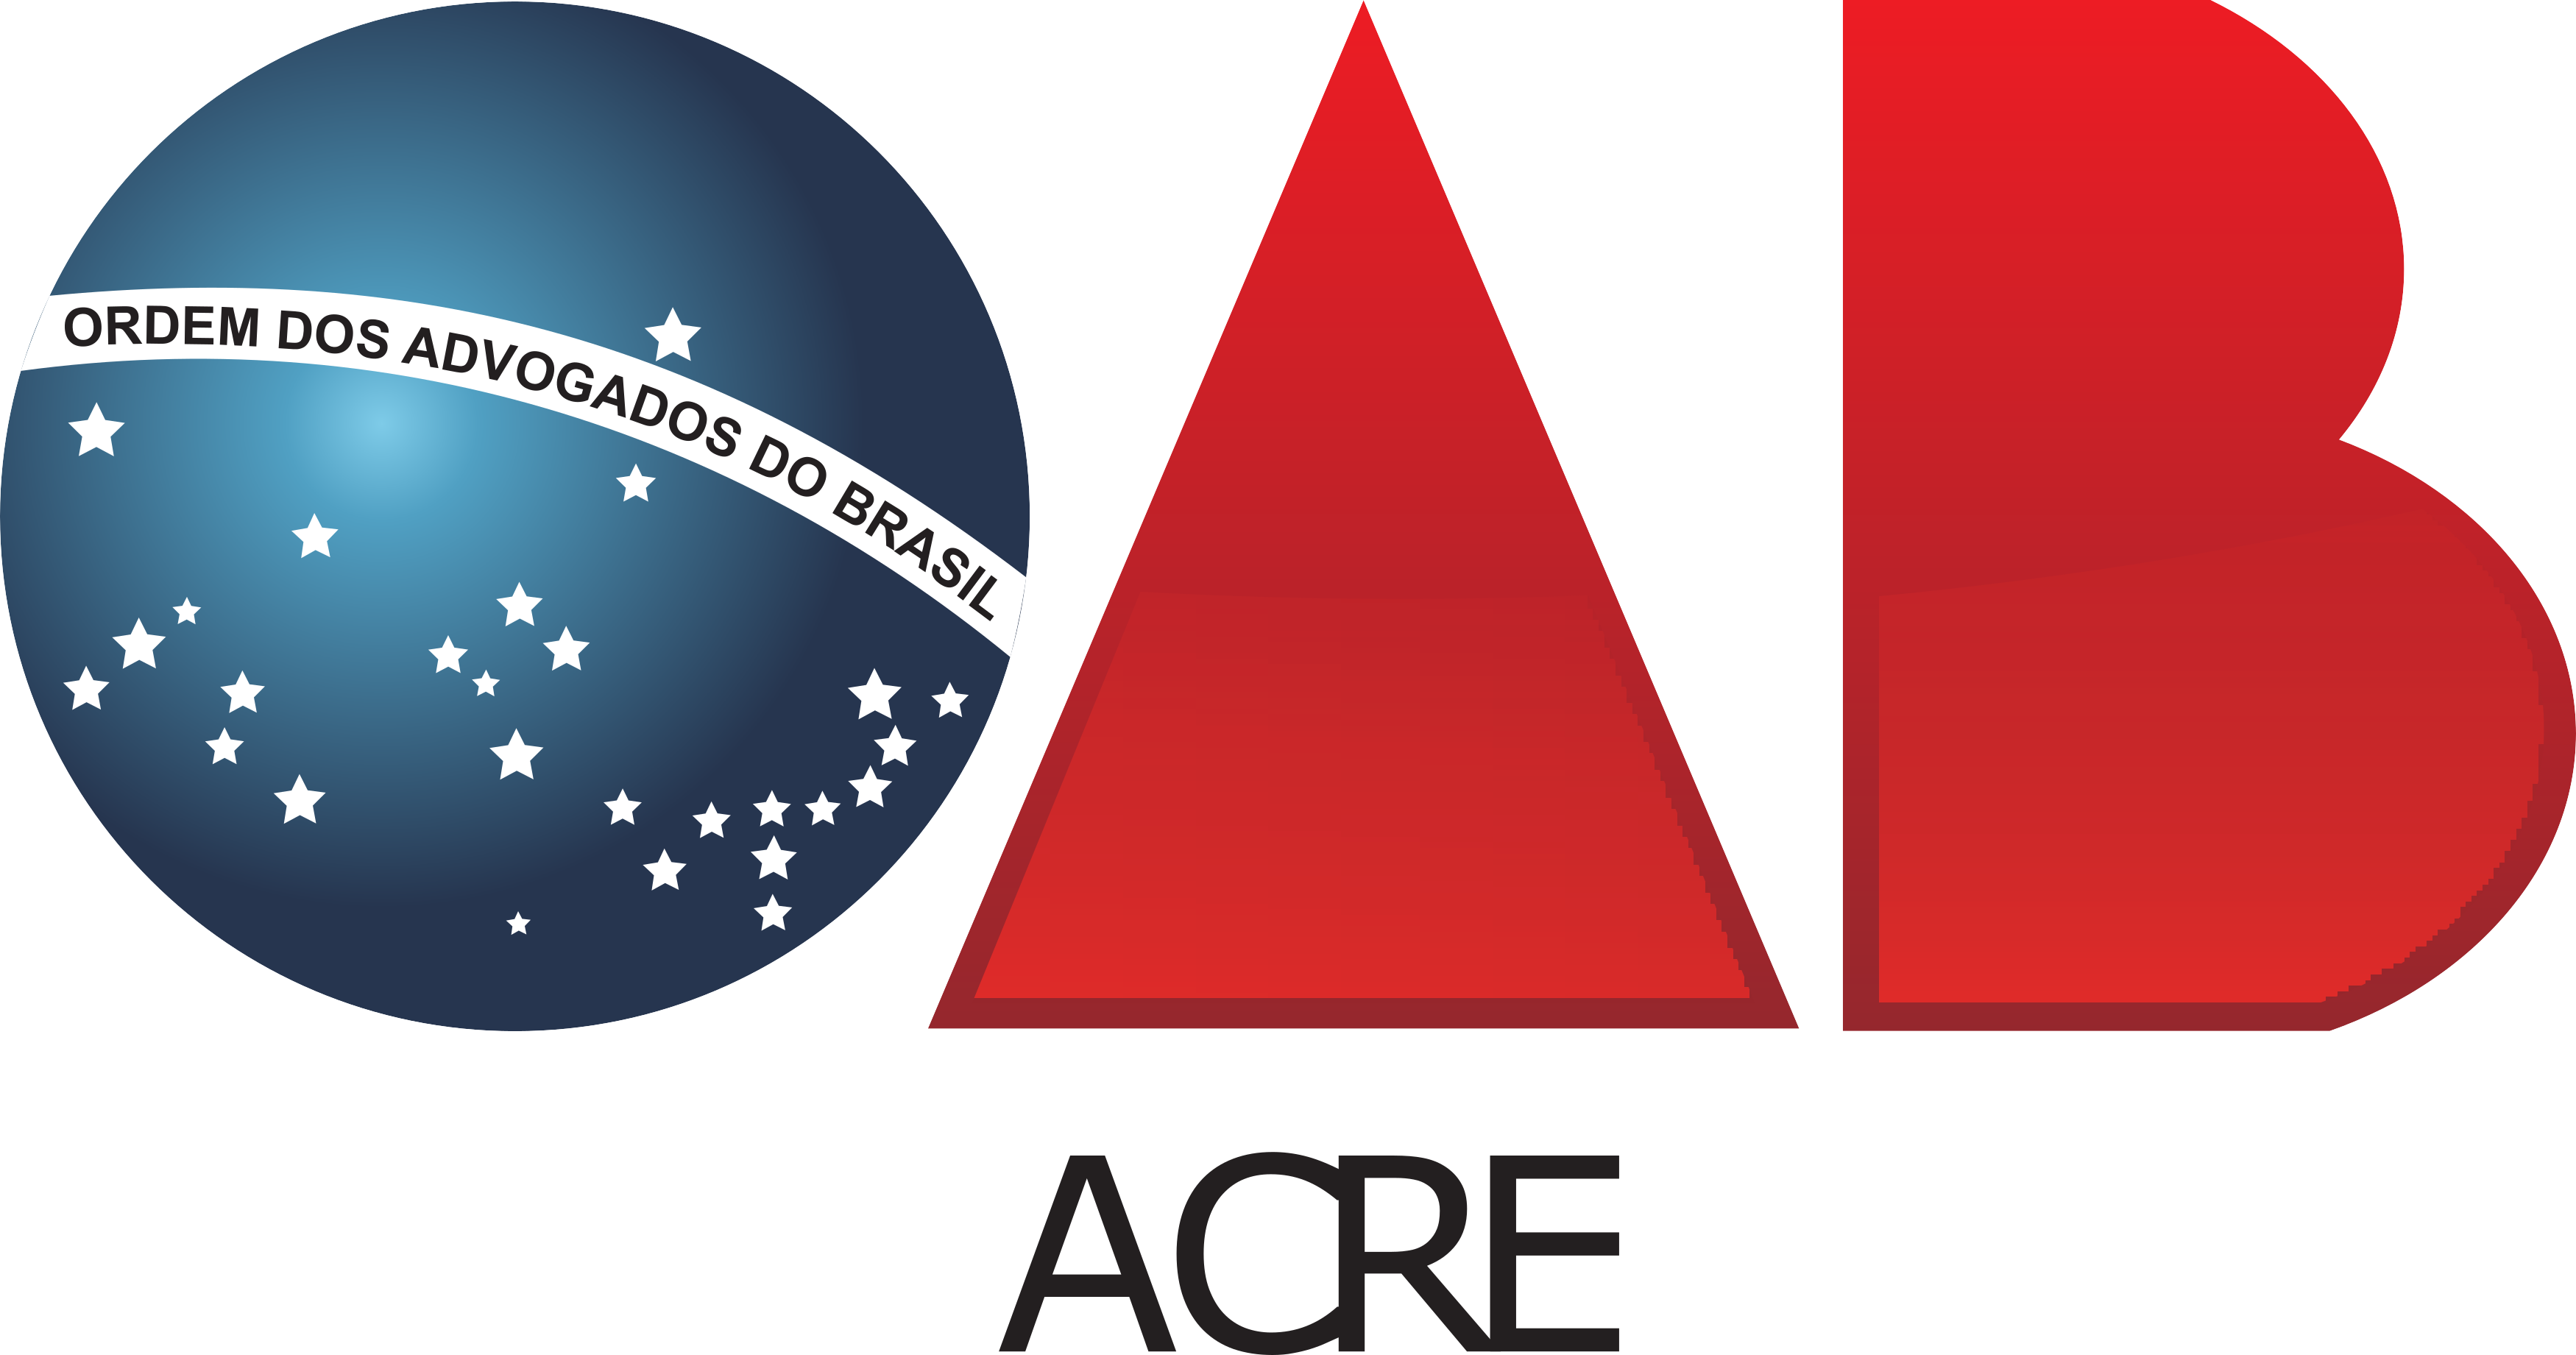 OAB Acre Logo.